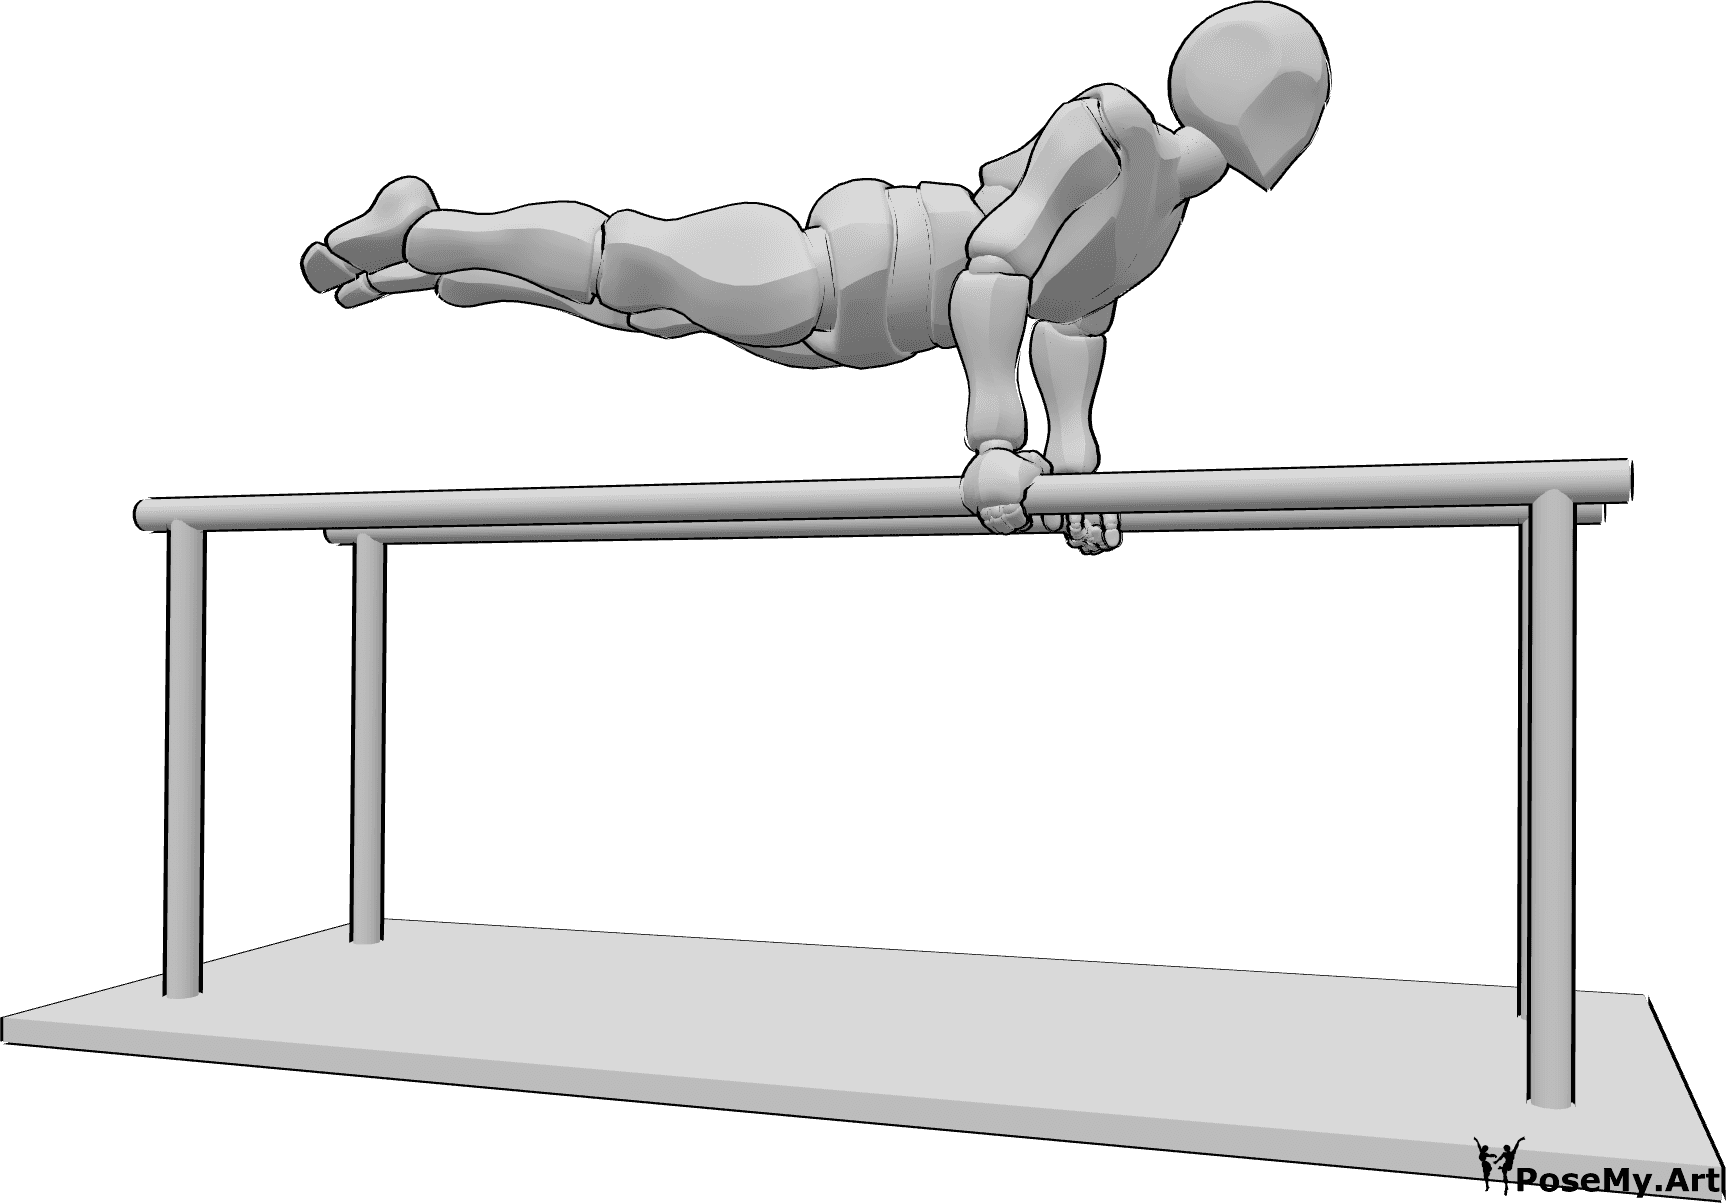 Référence des poses- Barres parallèles en équilibre sur les mains - L'homme fait de la gymnastique aux barres parallèles, en se tenant debout sur les mains et en gardant son corps droit en l'air à l'horizontale.